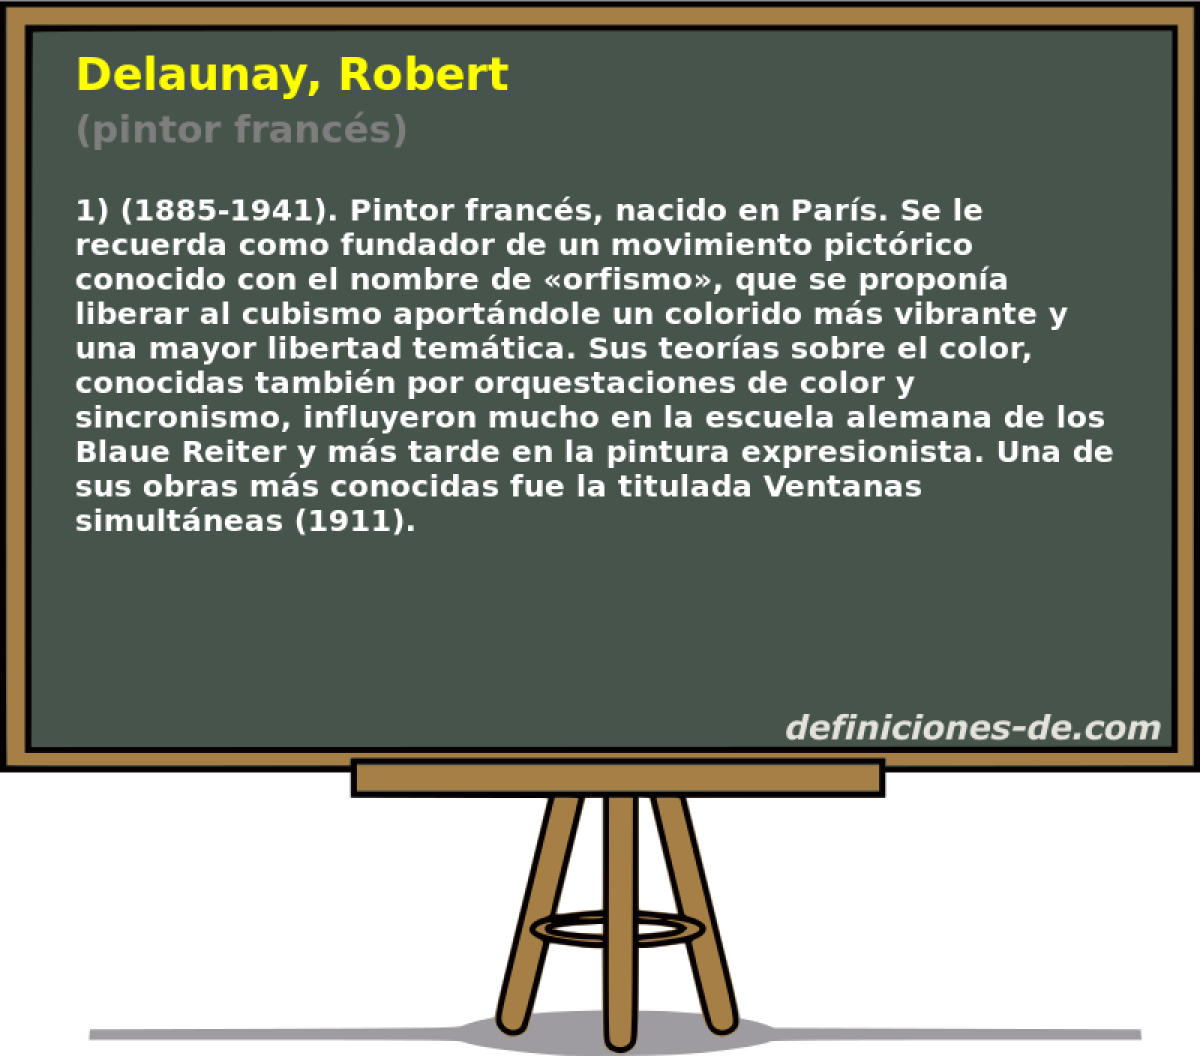 Delaunay, Robert (pintor francs)